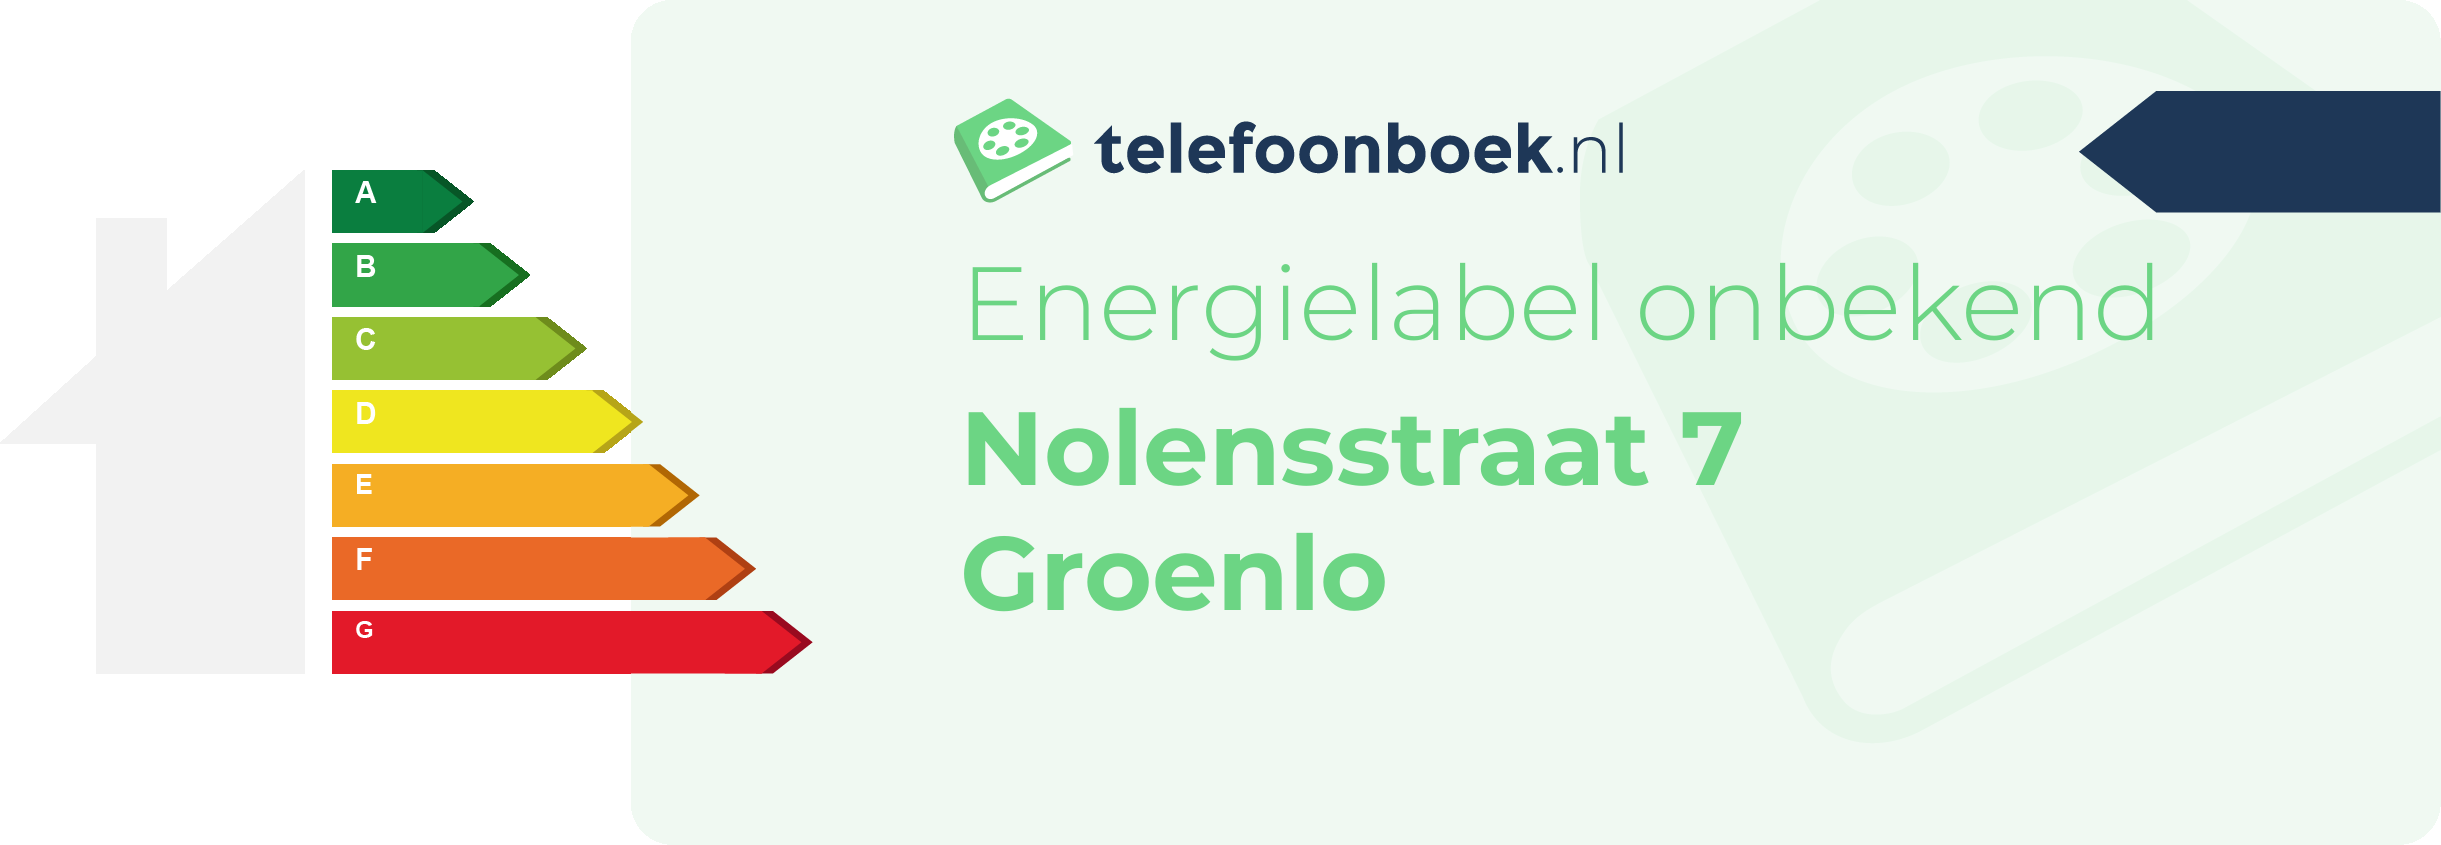 Energielabel Nolensstraat 7 Groenlo